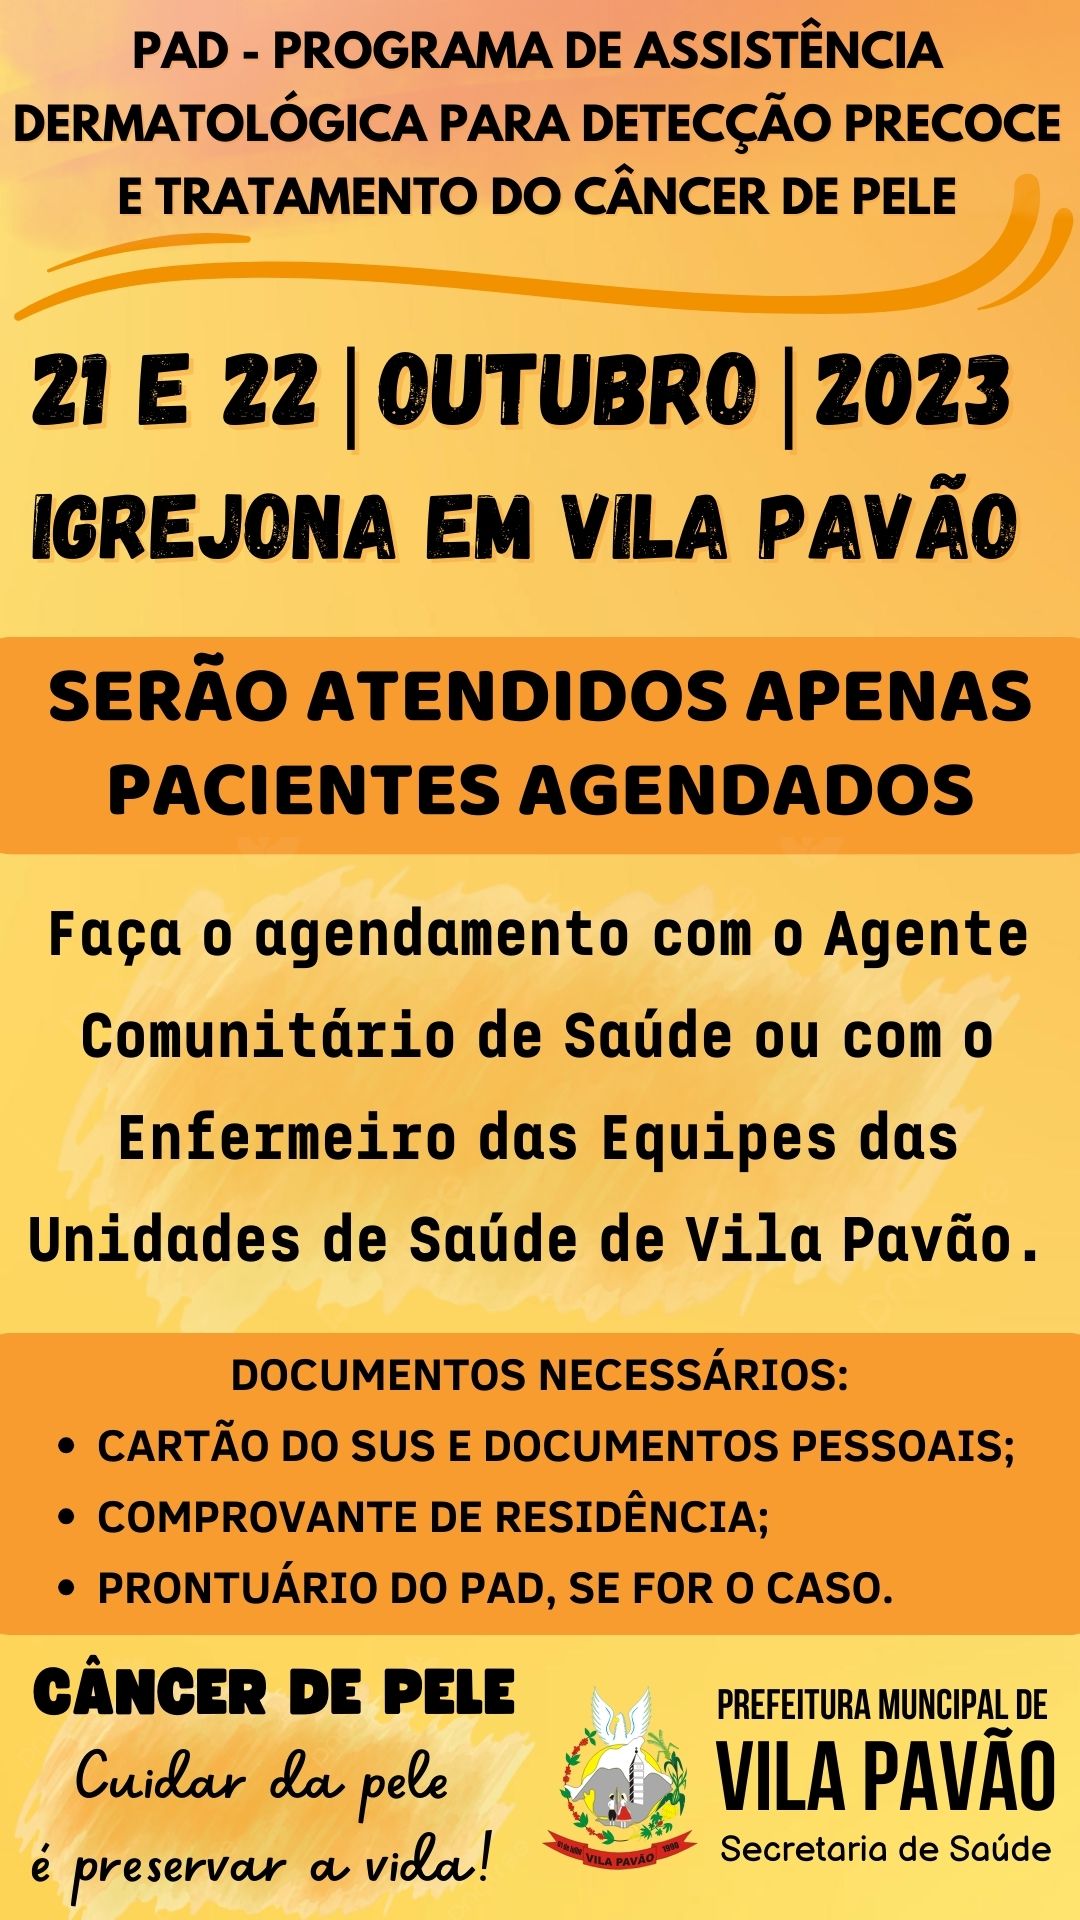 PAD - VILA PAVÃO